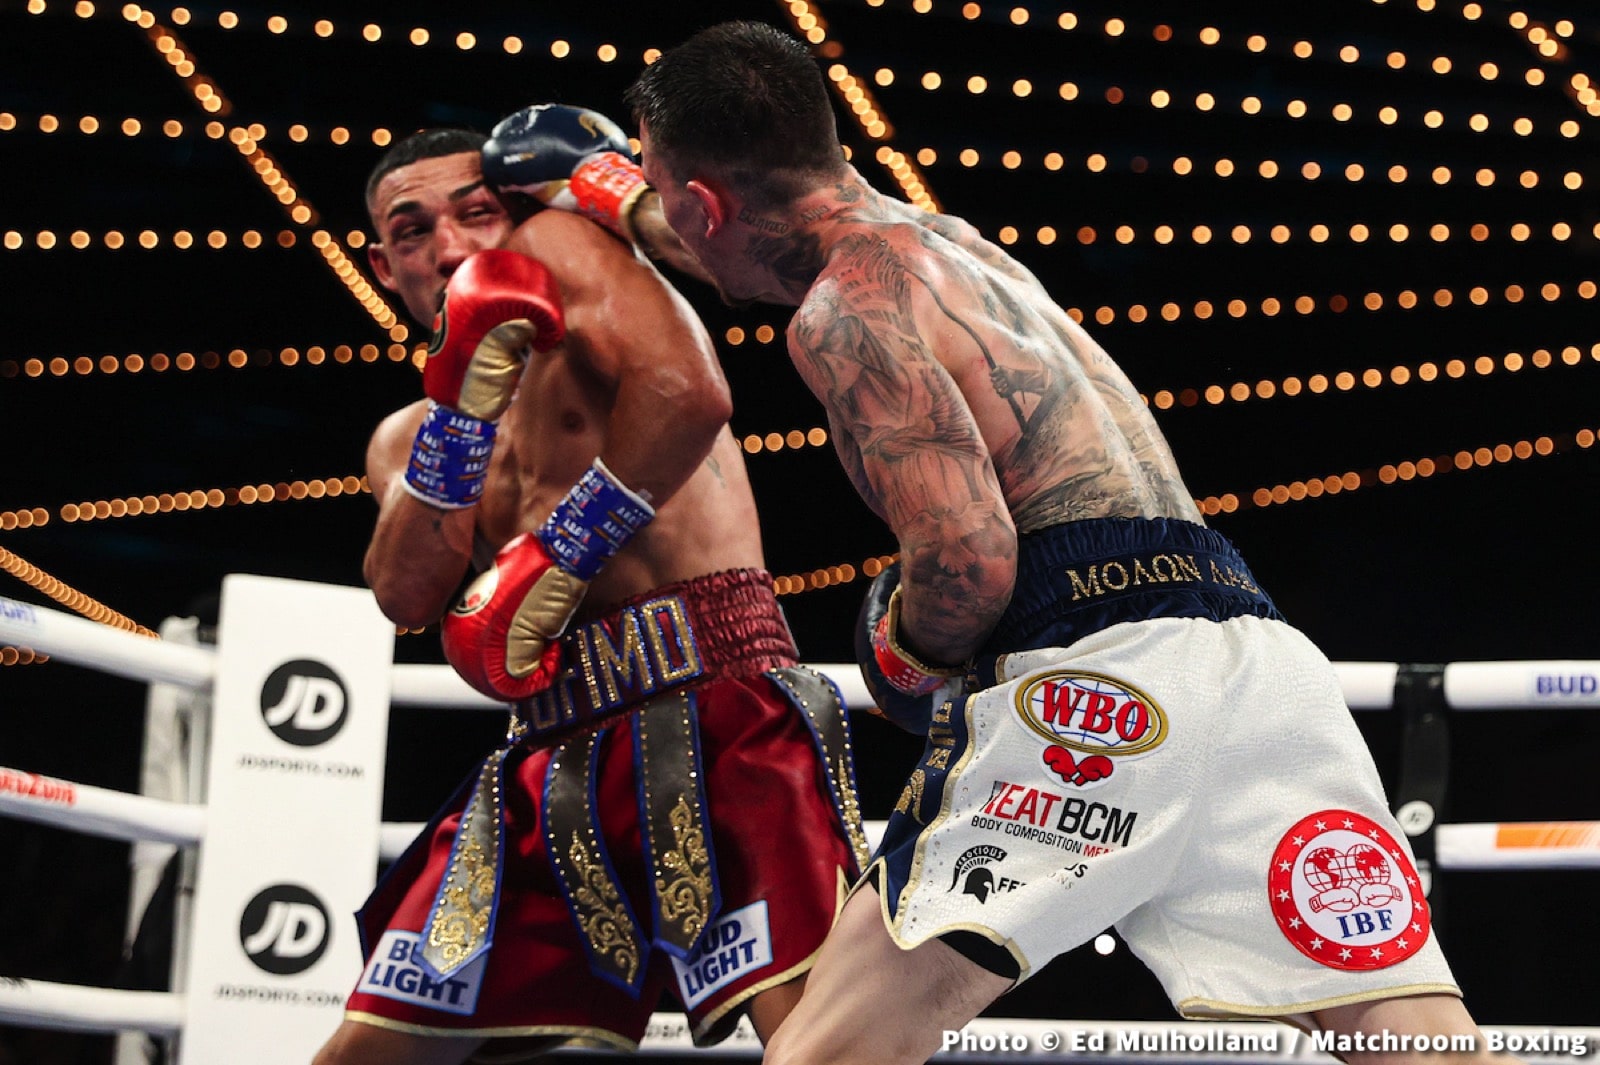 George Kambosos Jr., Teofimo Lopez Jr boxing image / photo